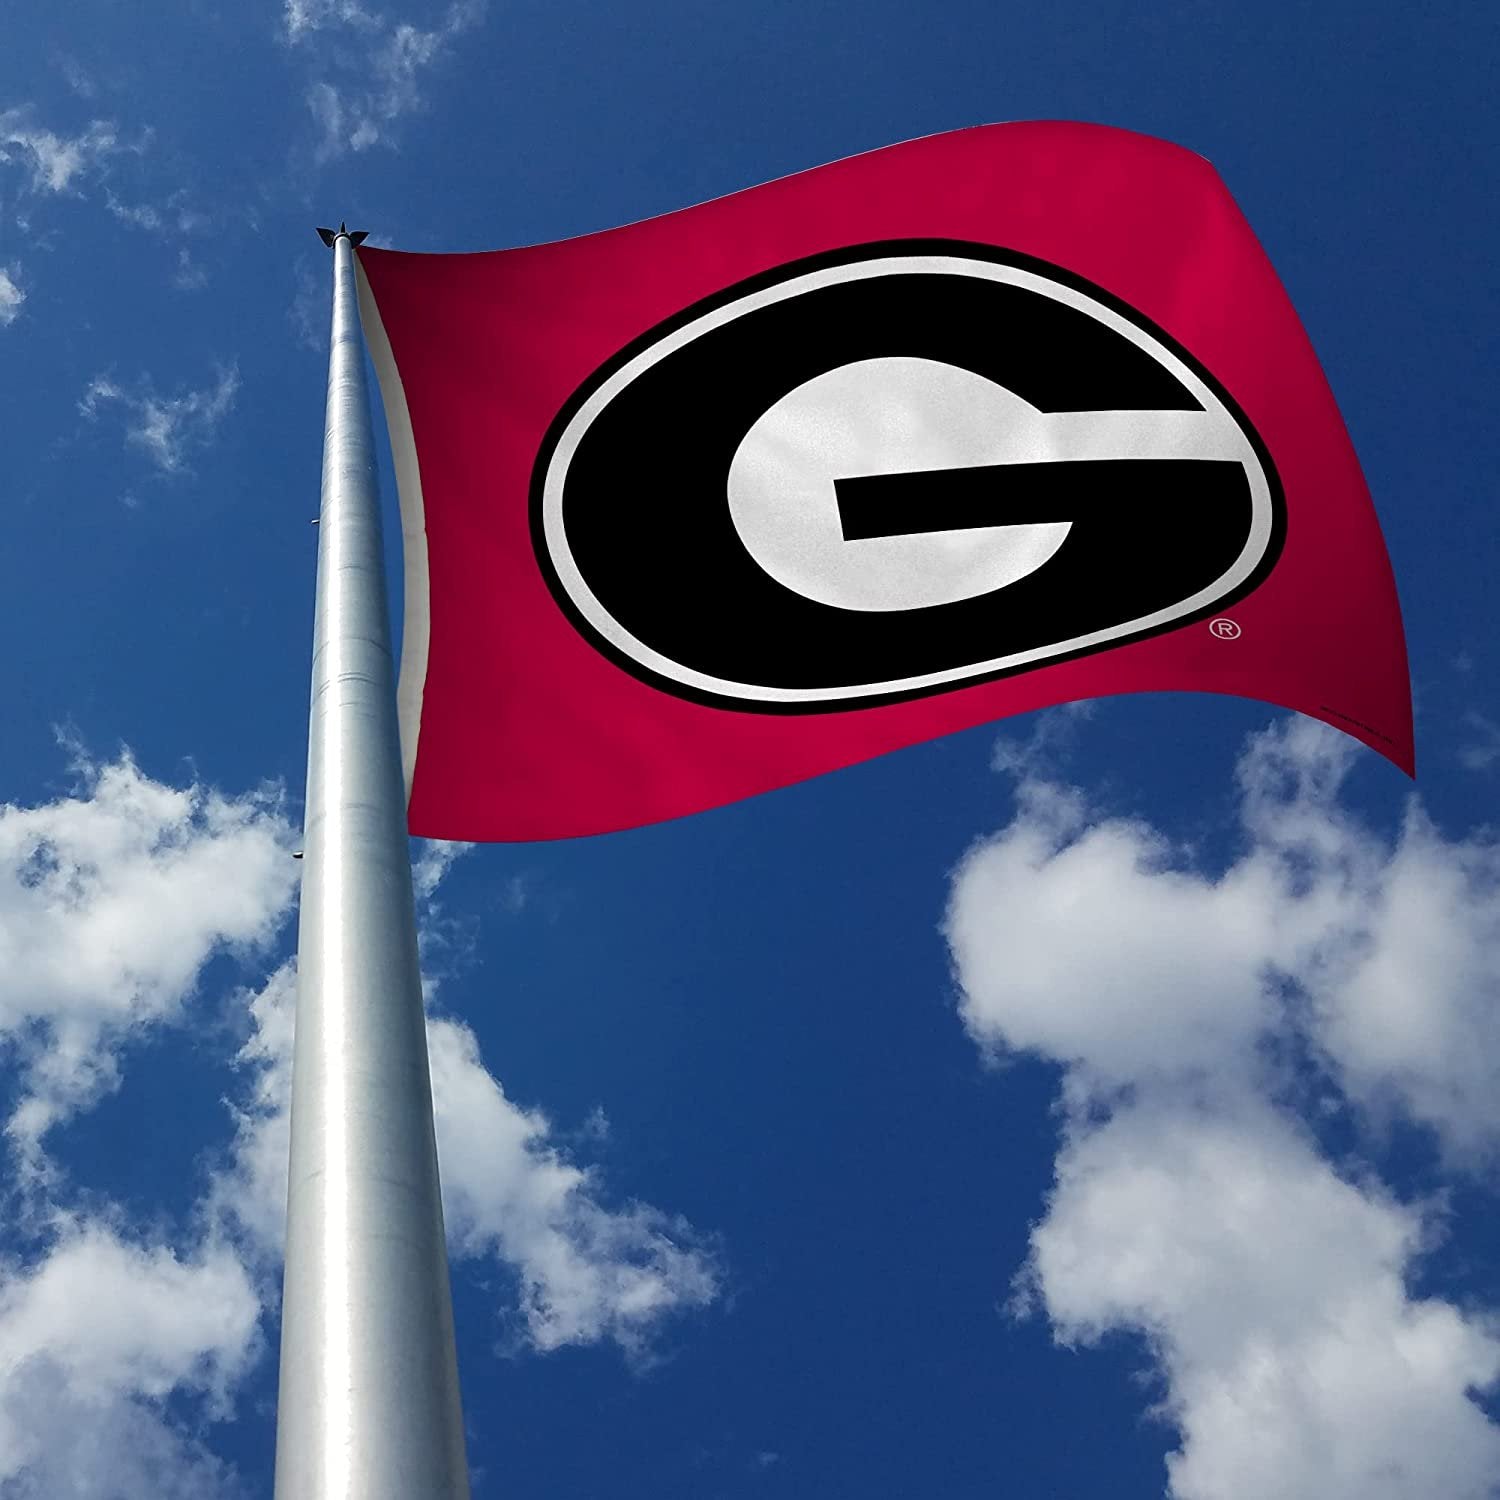 University of Georgia Bulldogs 3x5 Foot Flag Banner Metal Grommets Indoor Outdoor